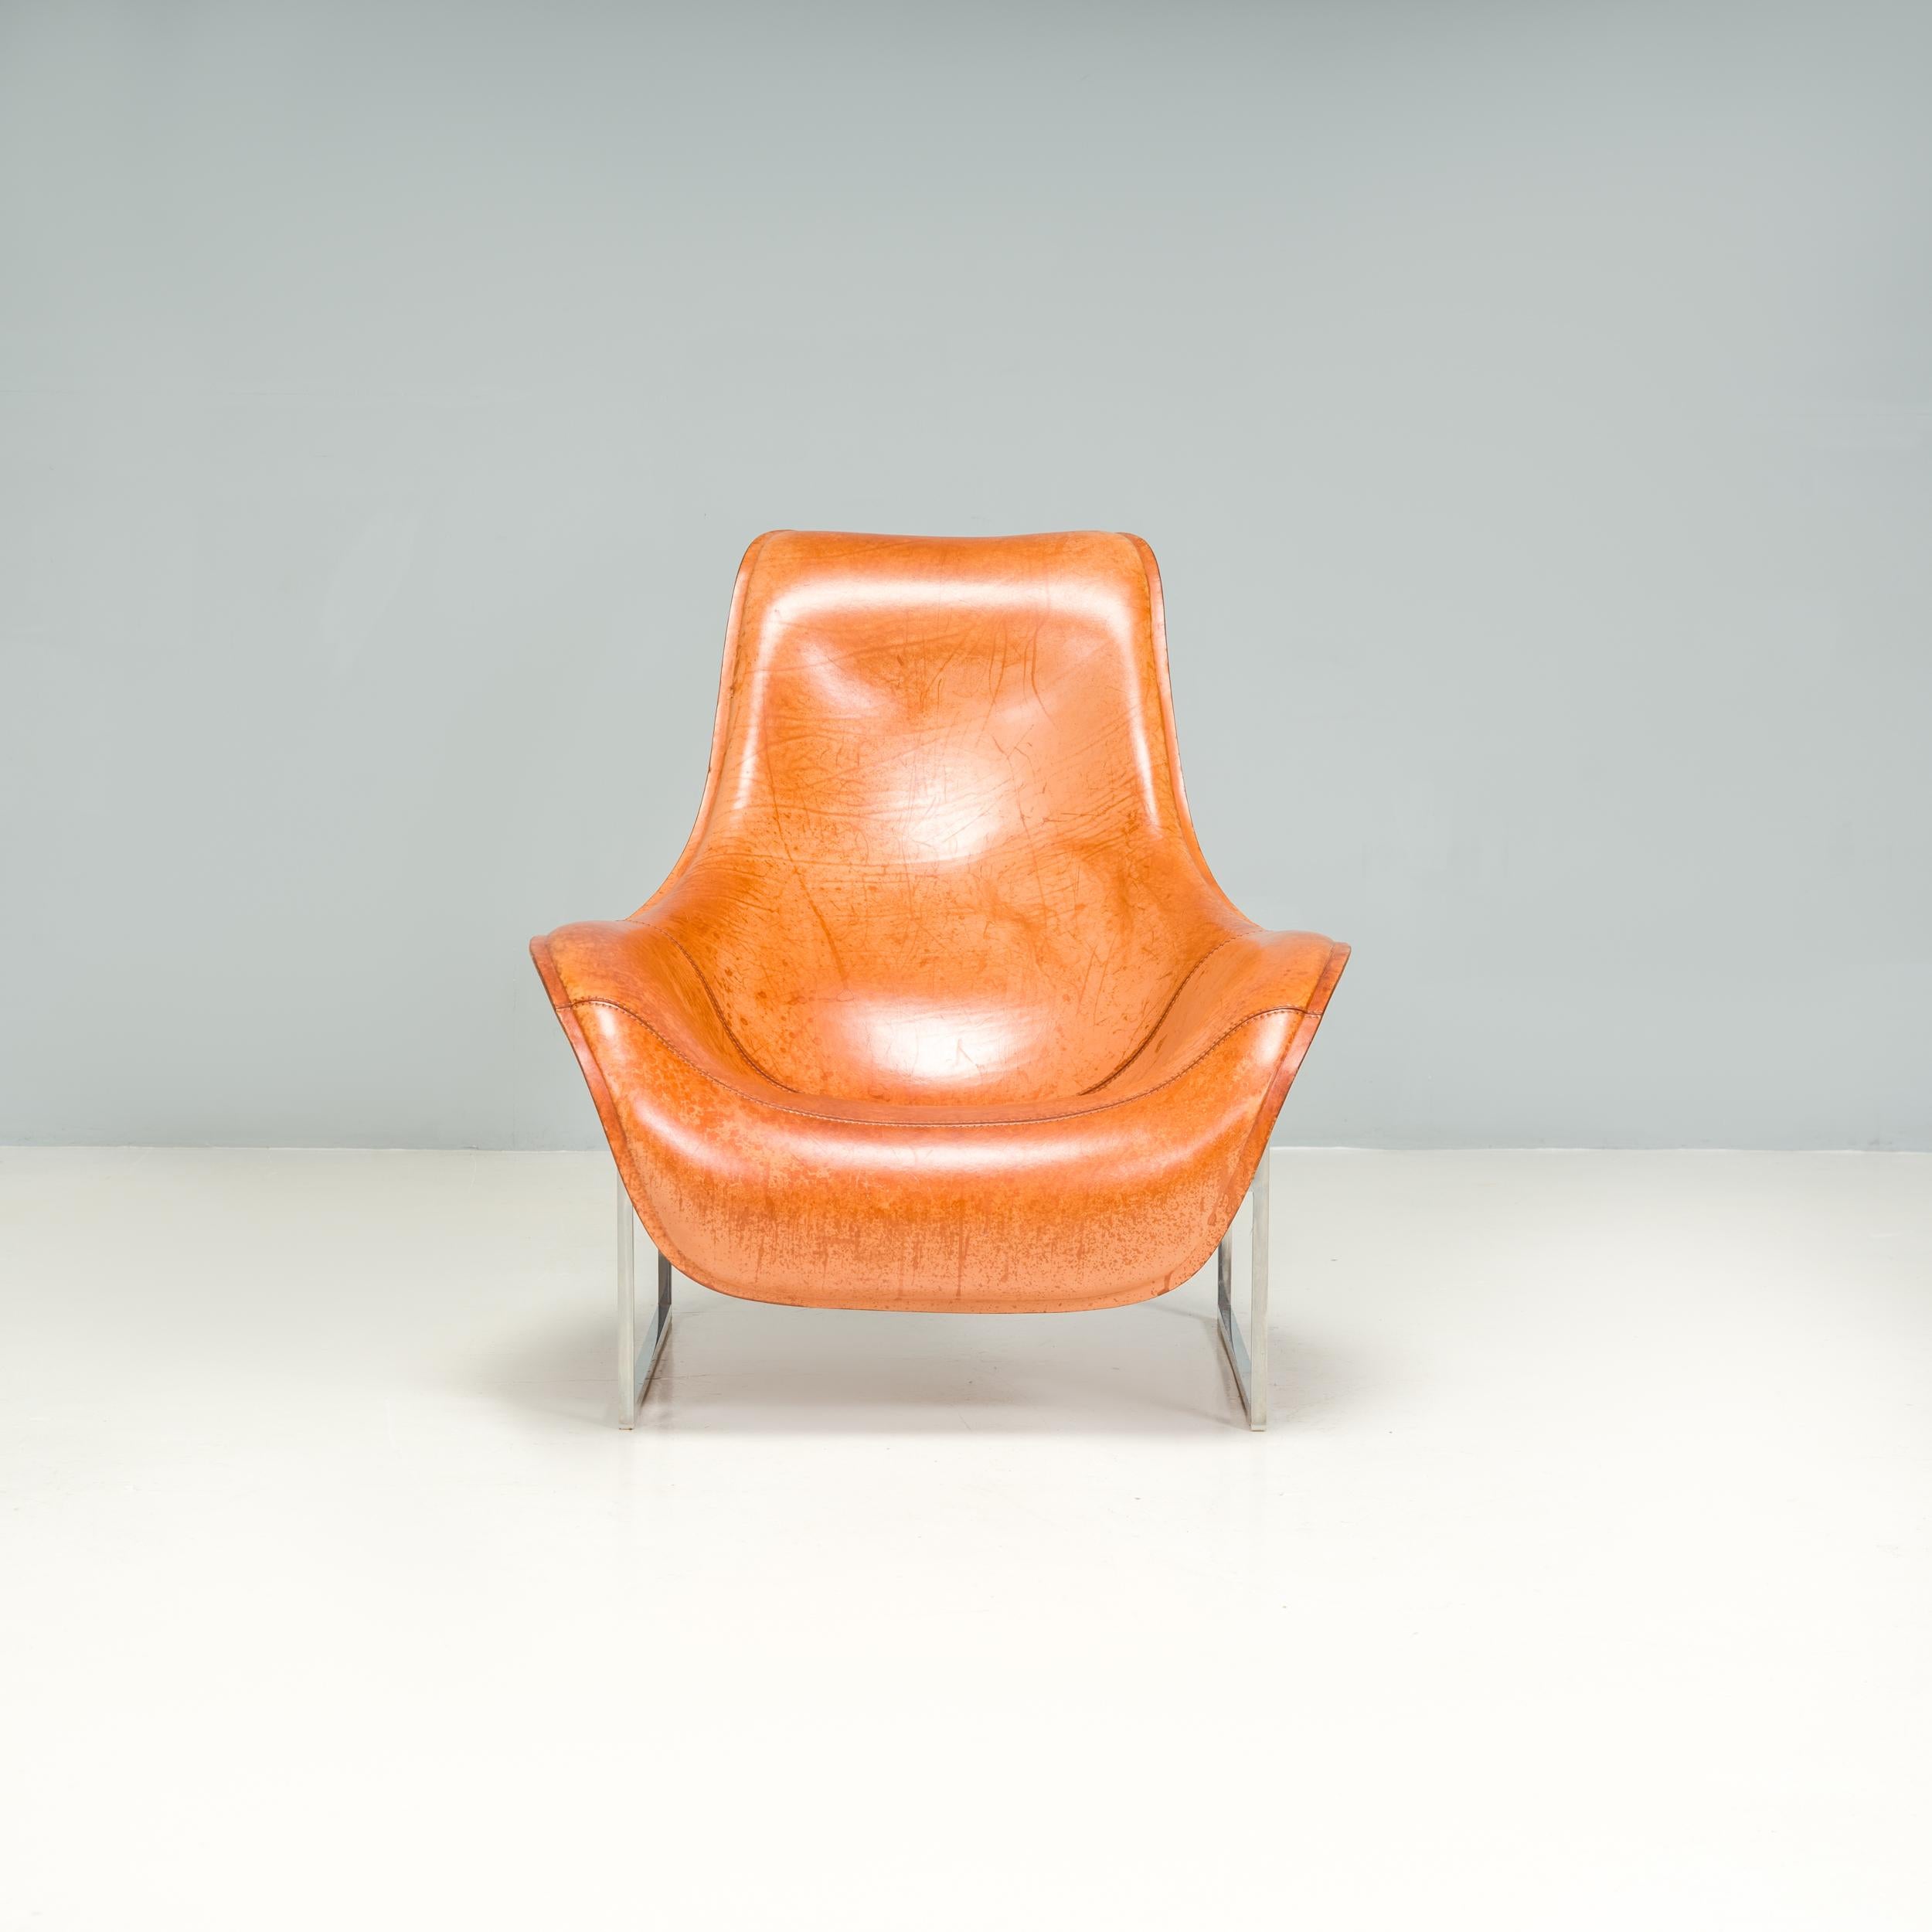 Der 2003 von Antonio Citterio für B&B Italia entworfene Mart-Loungesessel ist ein fantastisches Beispiel für modernes Design.

Die geschwungene Silhouette entsteht durch die Verwendung von geformtem Polyurethanschaum und thermogeformtem Leder, das